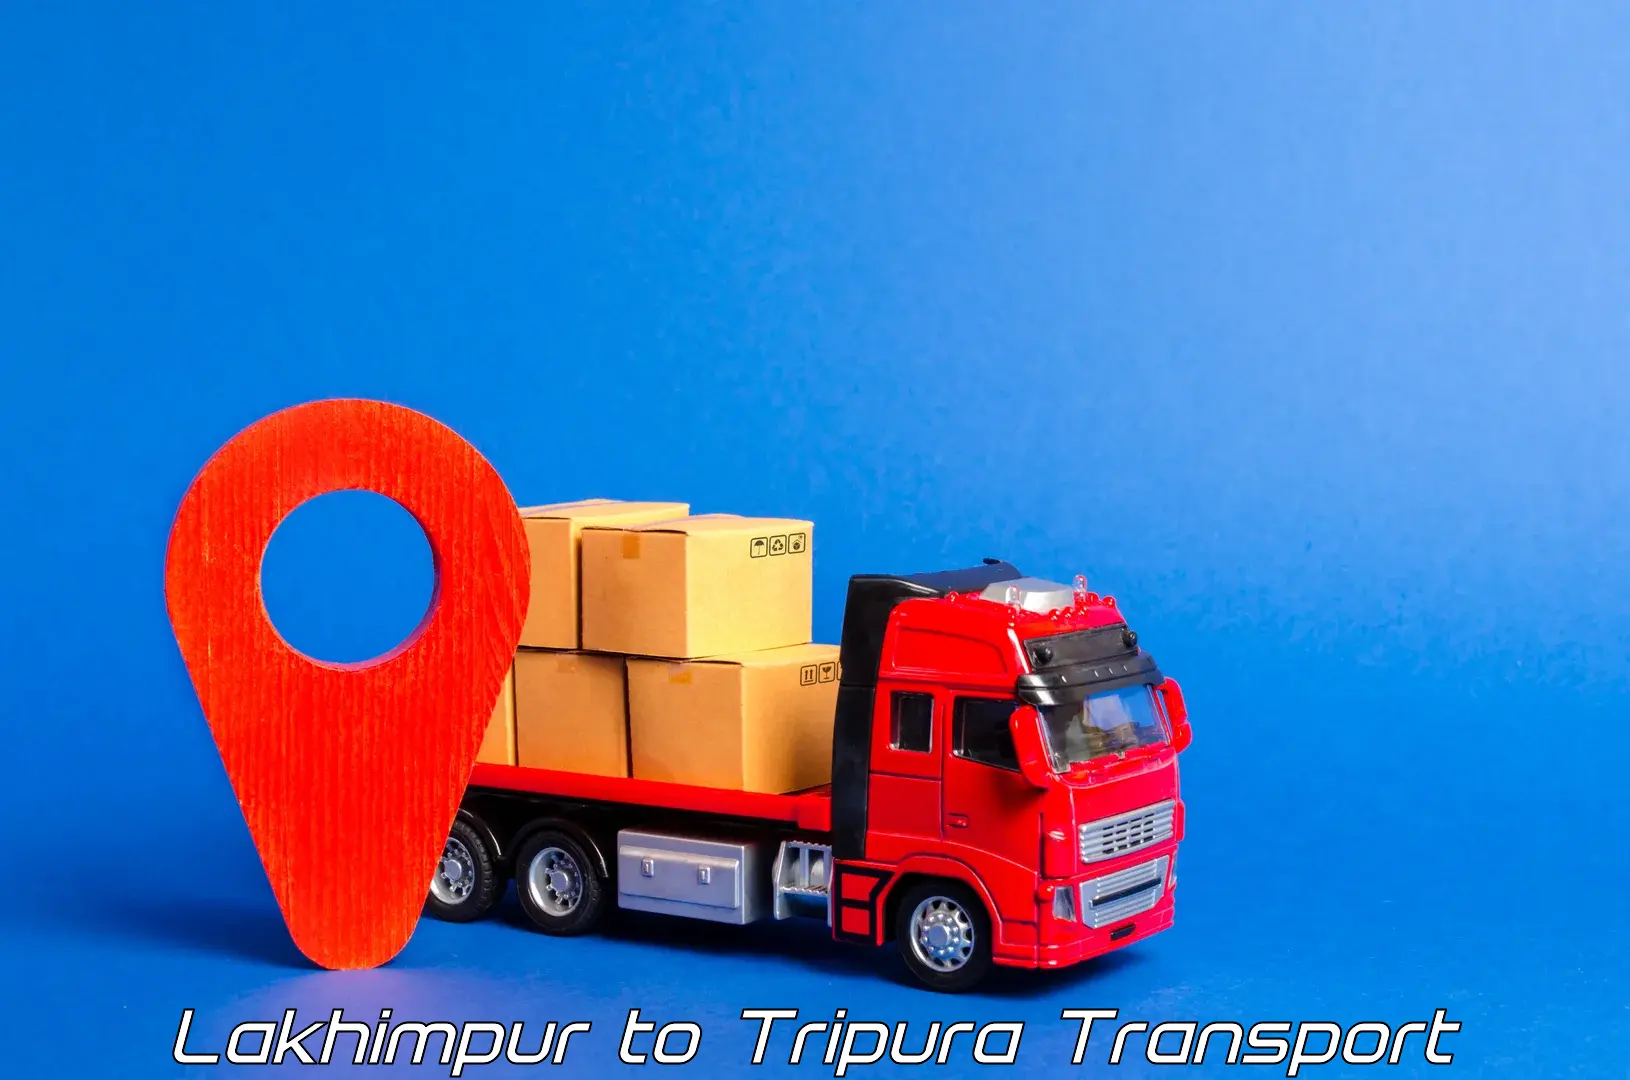 Nationwide transport services Lakhimpur to Bishalgarh